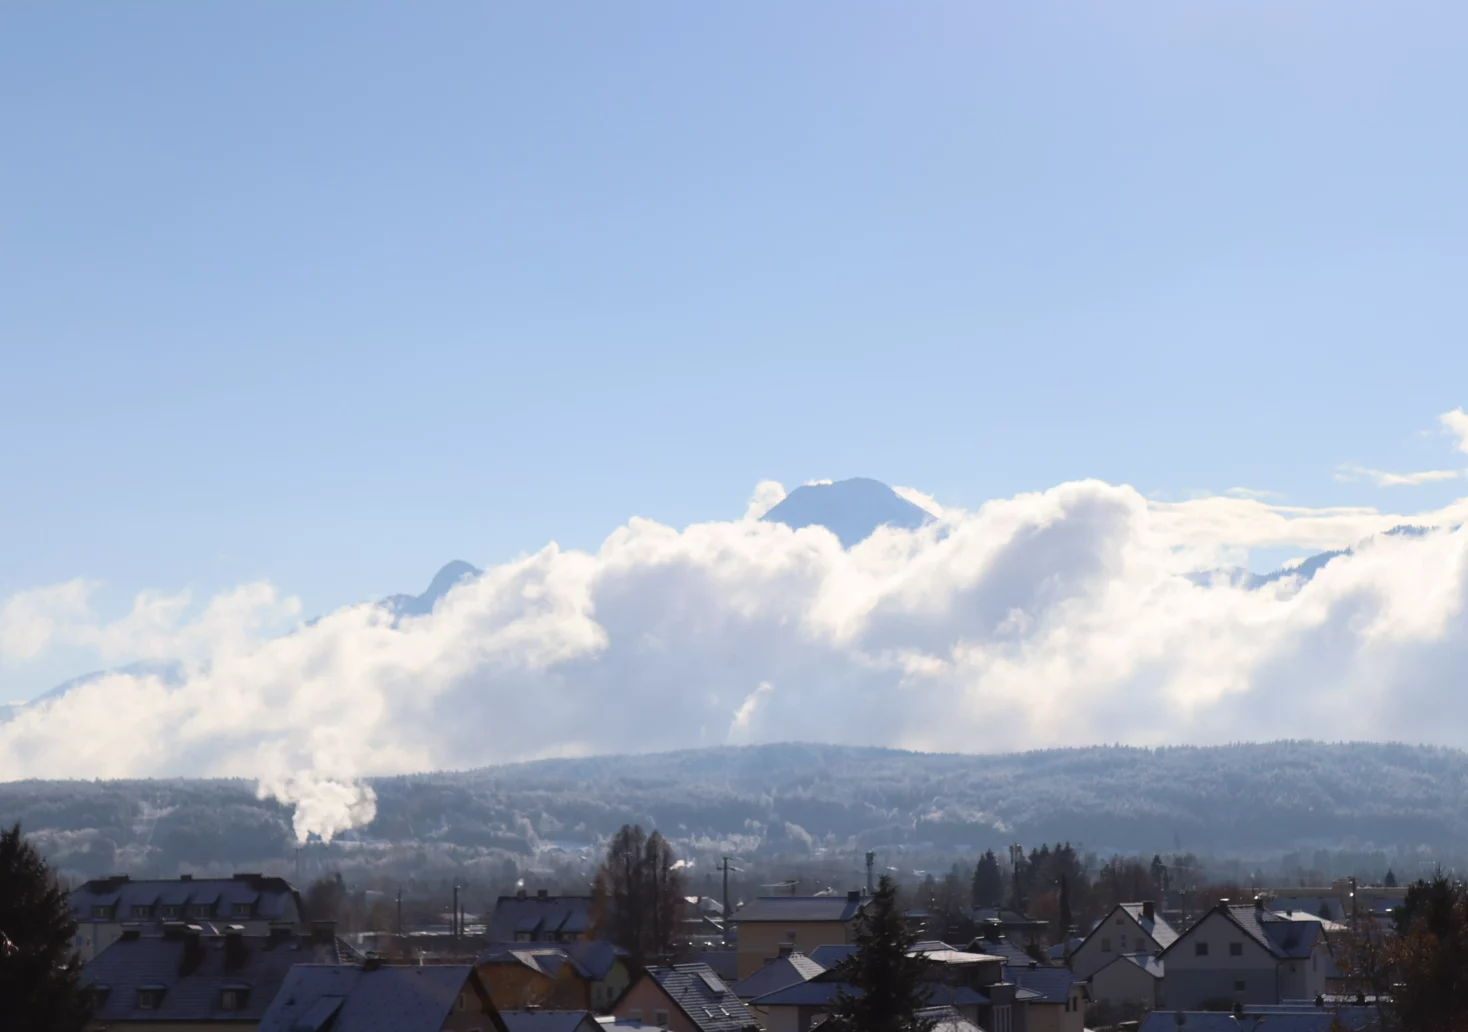 Ein Bild auf 5min.at zeigt das verschneite Villach vor einer Bergkulisse. Der Himmel ist blau.